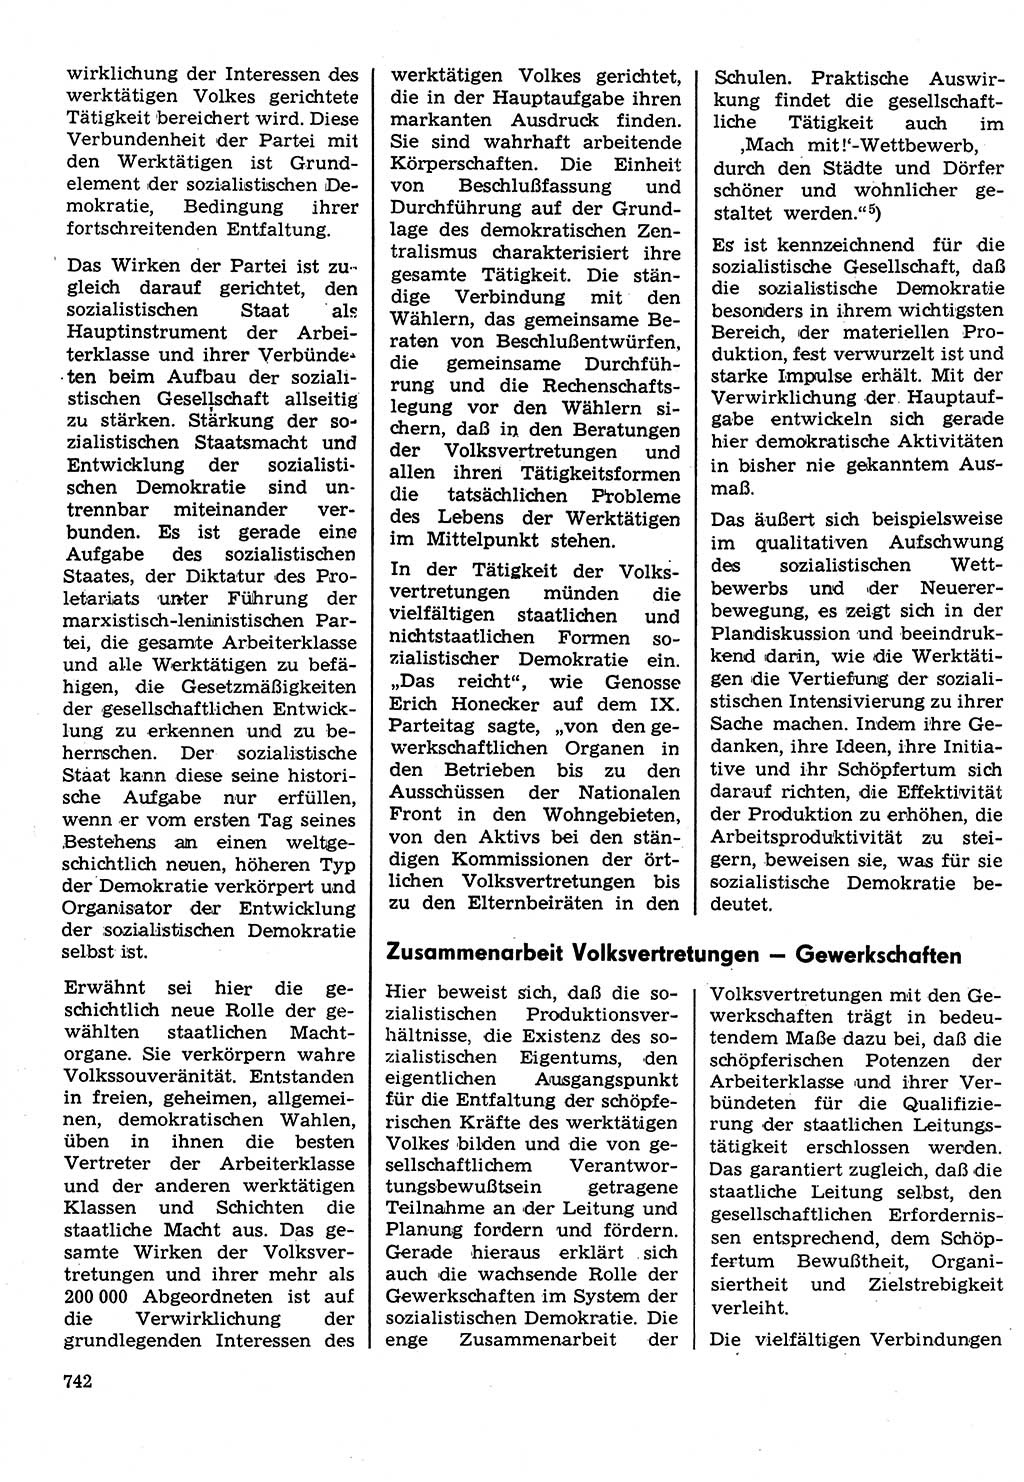 Neuer Weg (NW), Organ des Zentralkomitees (ZK) der SED (Sozialistische Einheitspartei Deutschlands) für Fragen des Parteilebens, 31. Jahrgang [Deutsche Demokratische Republik (DDR)] 1976, Seite 742 (NW ZK SED DDR 1976, S. 742)